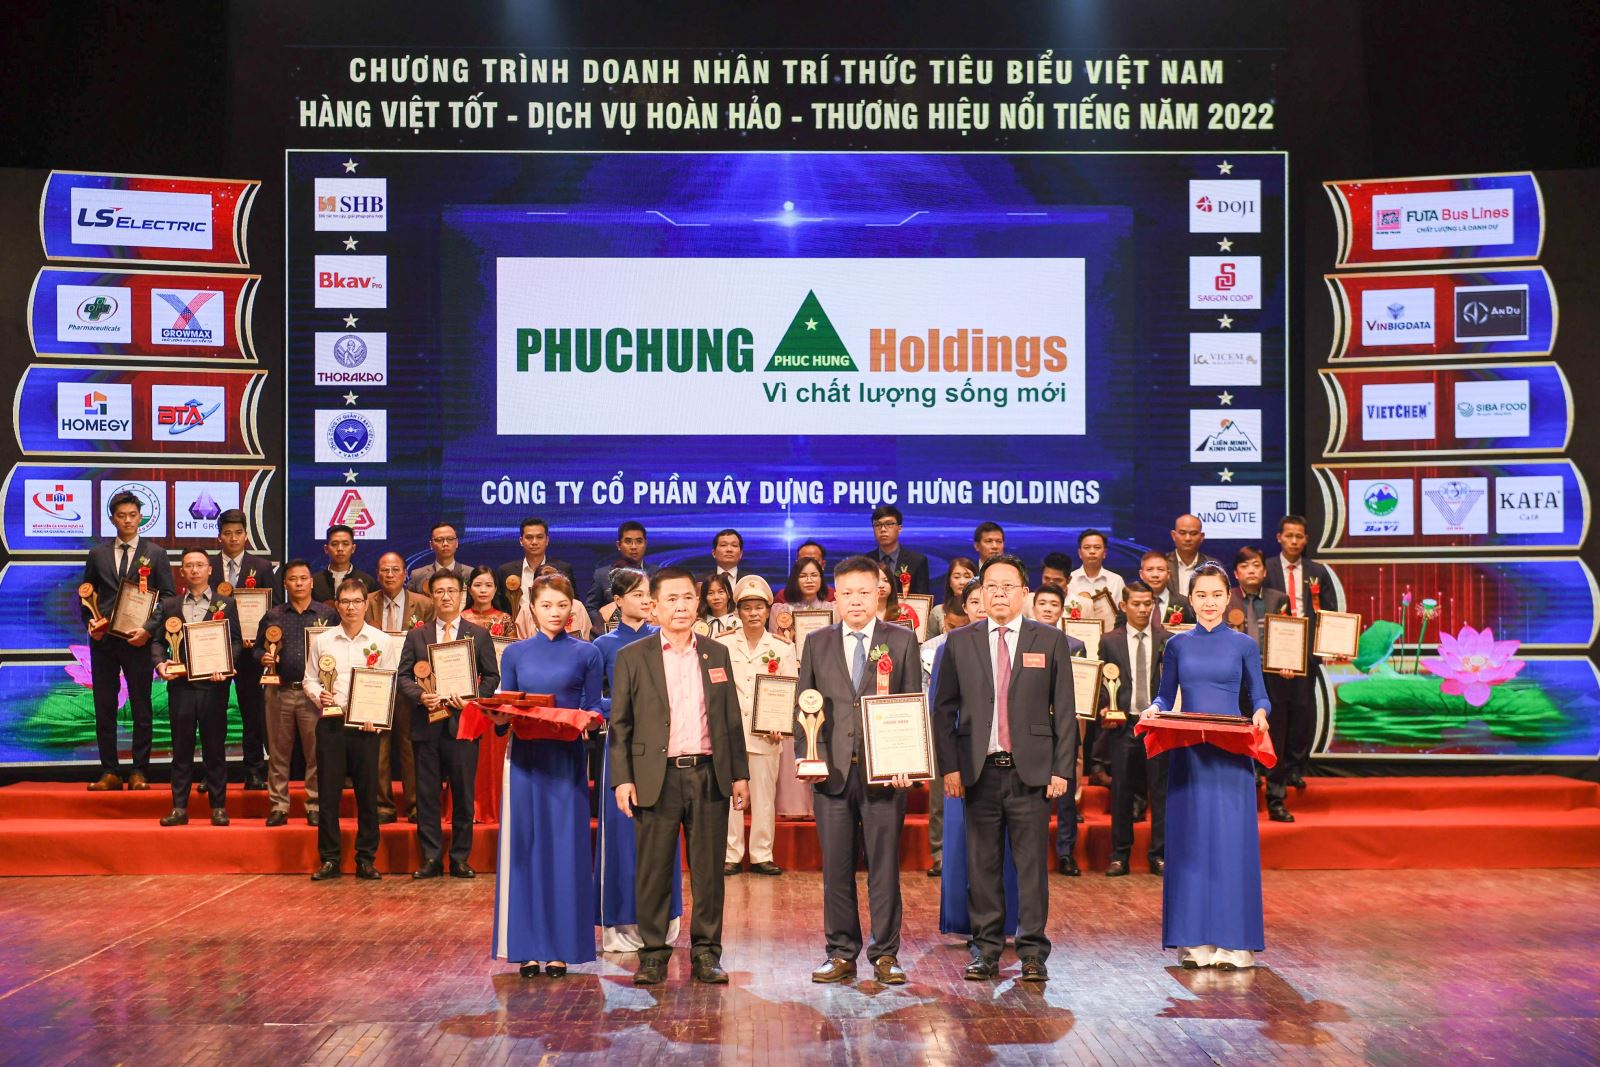 Công ty Cổ phần Xây dựng Phục Hưng Holdings nhận giải thưởng thương hiệu uy tín